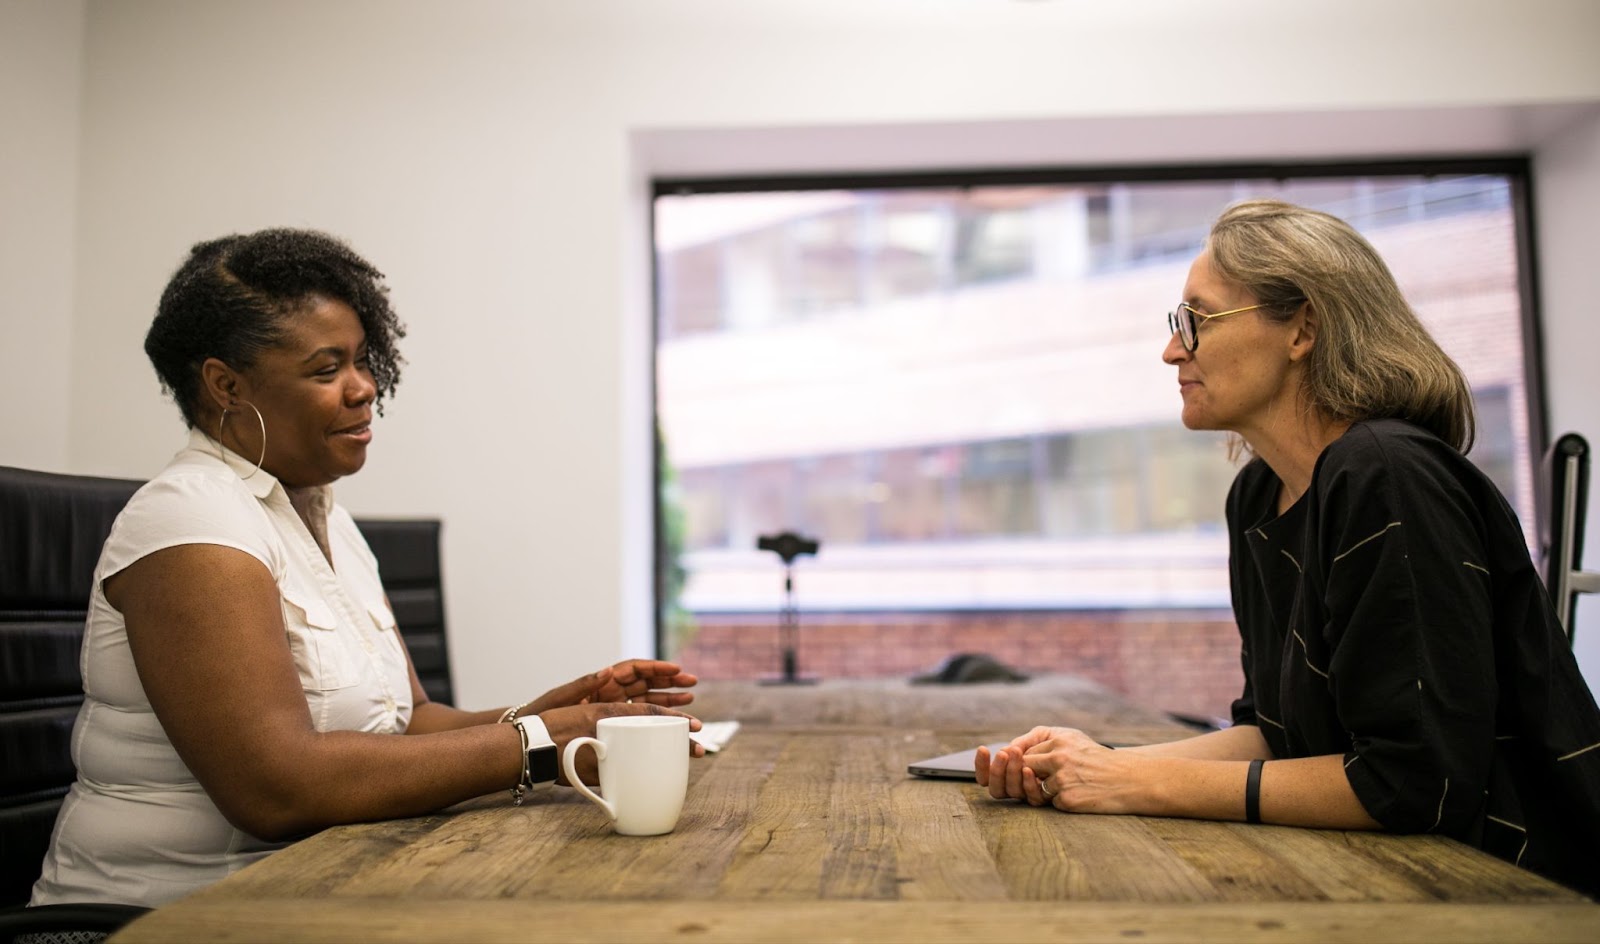 Two women talk about free tech programs NYC